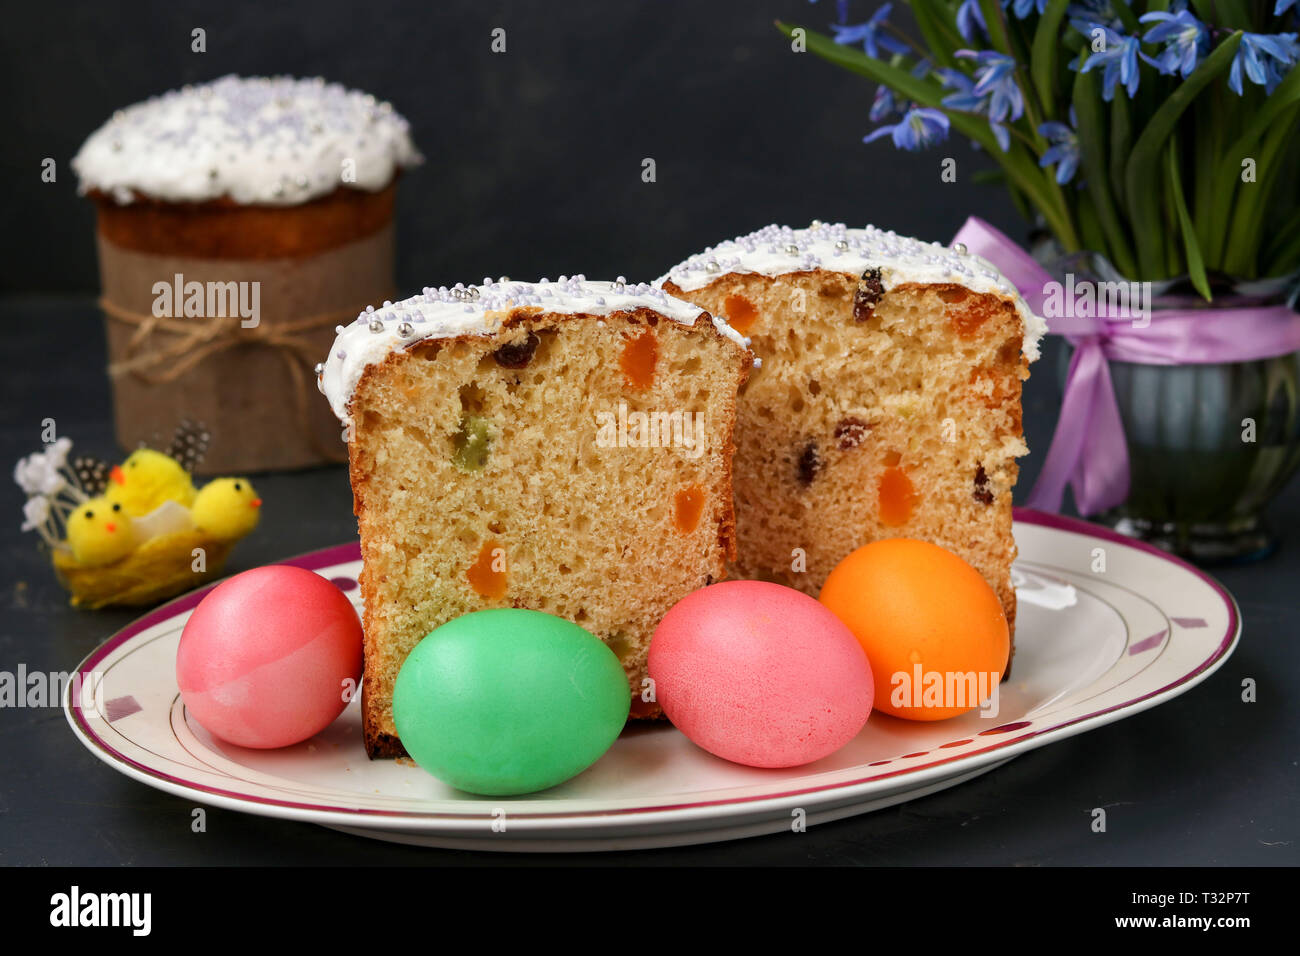 Gâteaux de Pâques et les oeufs colorés sont situés sur une plaque sur un fond sombre Banque D'Images